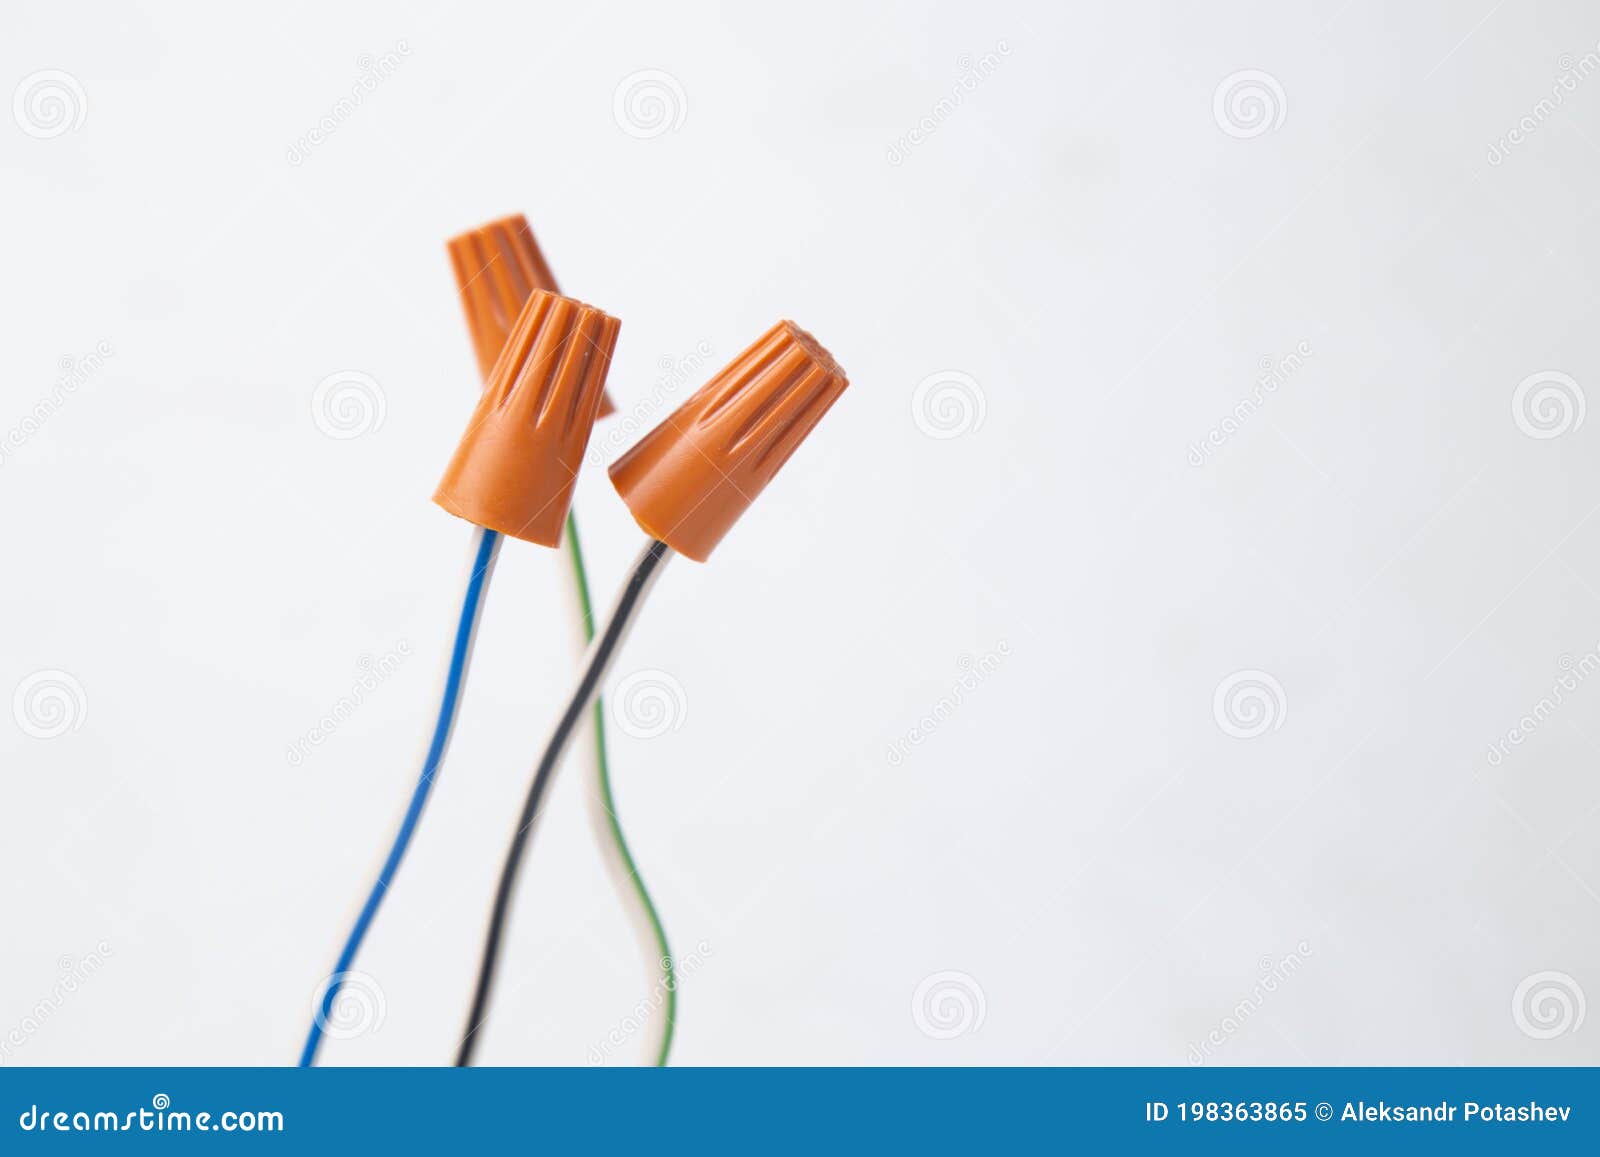 Conectores Para Conectar Cables Eléctricos. Equipos Eléctricos Y  Herramientas Imagen de archivo - Imagen de electricista, cobre: 198363865